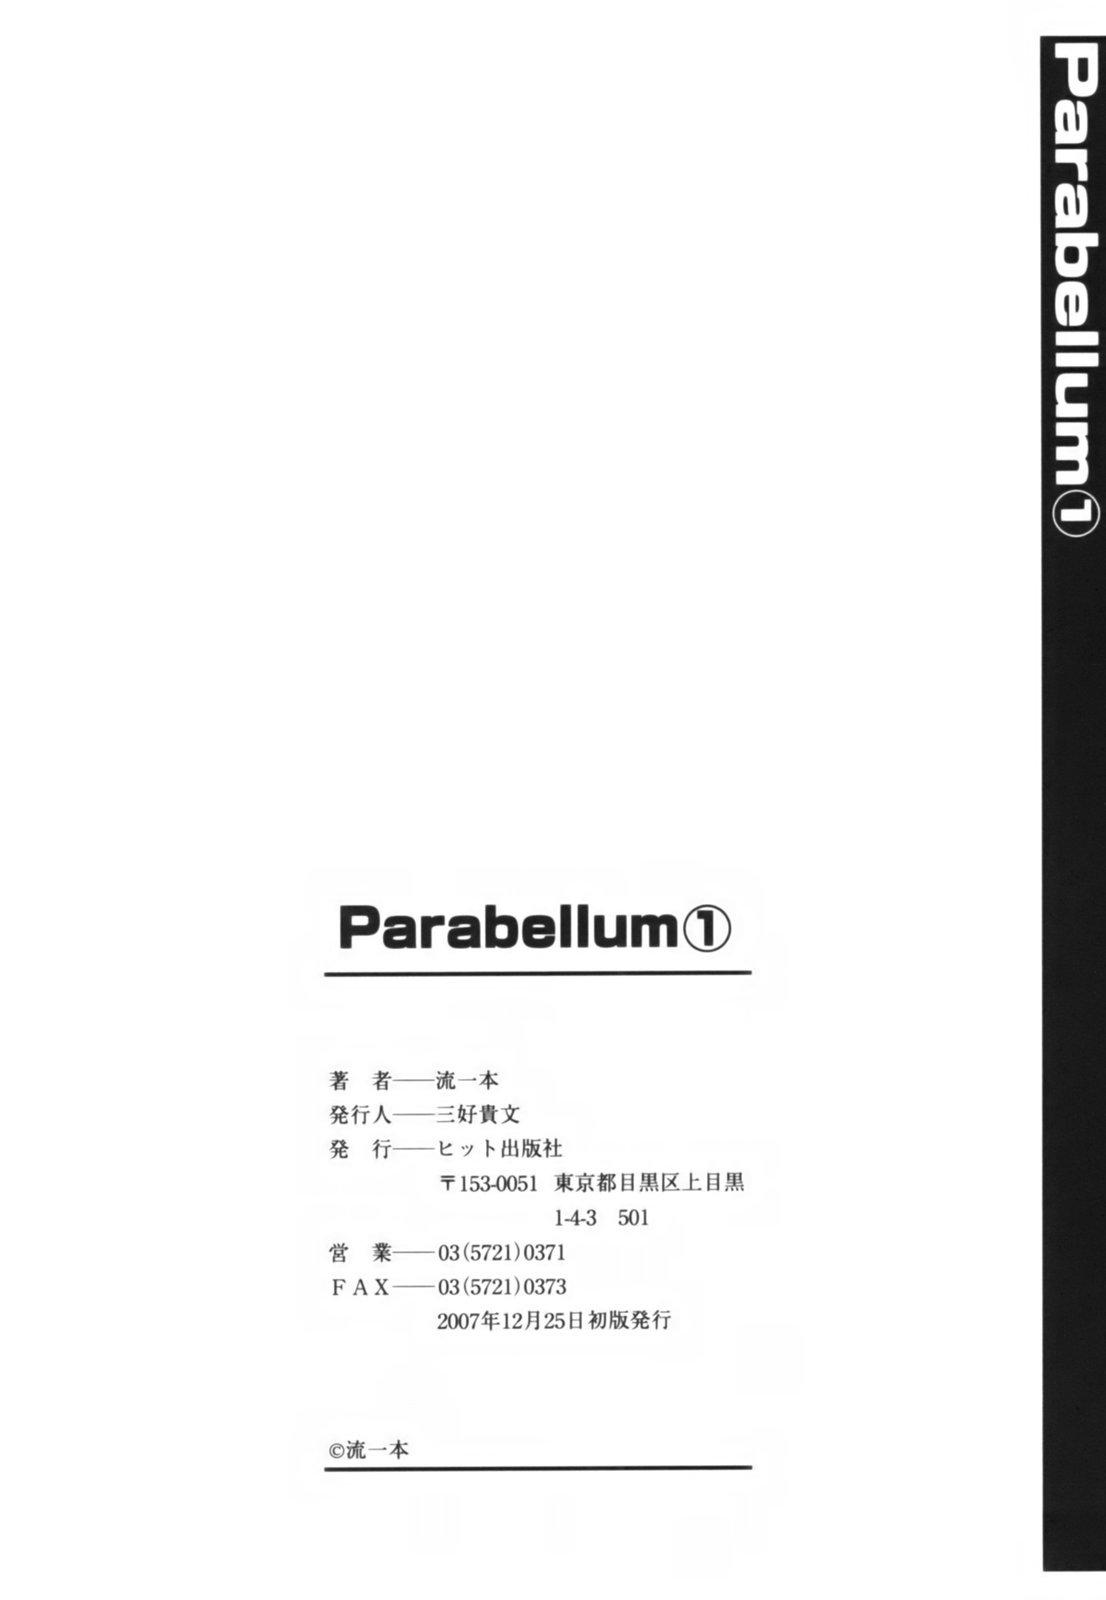 Parabellum 1 202